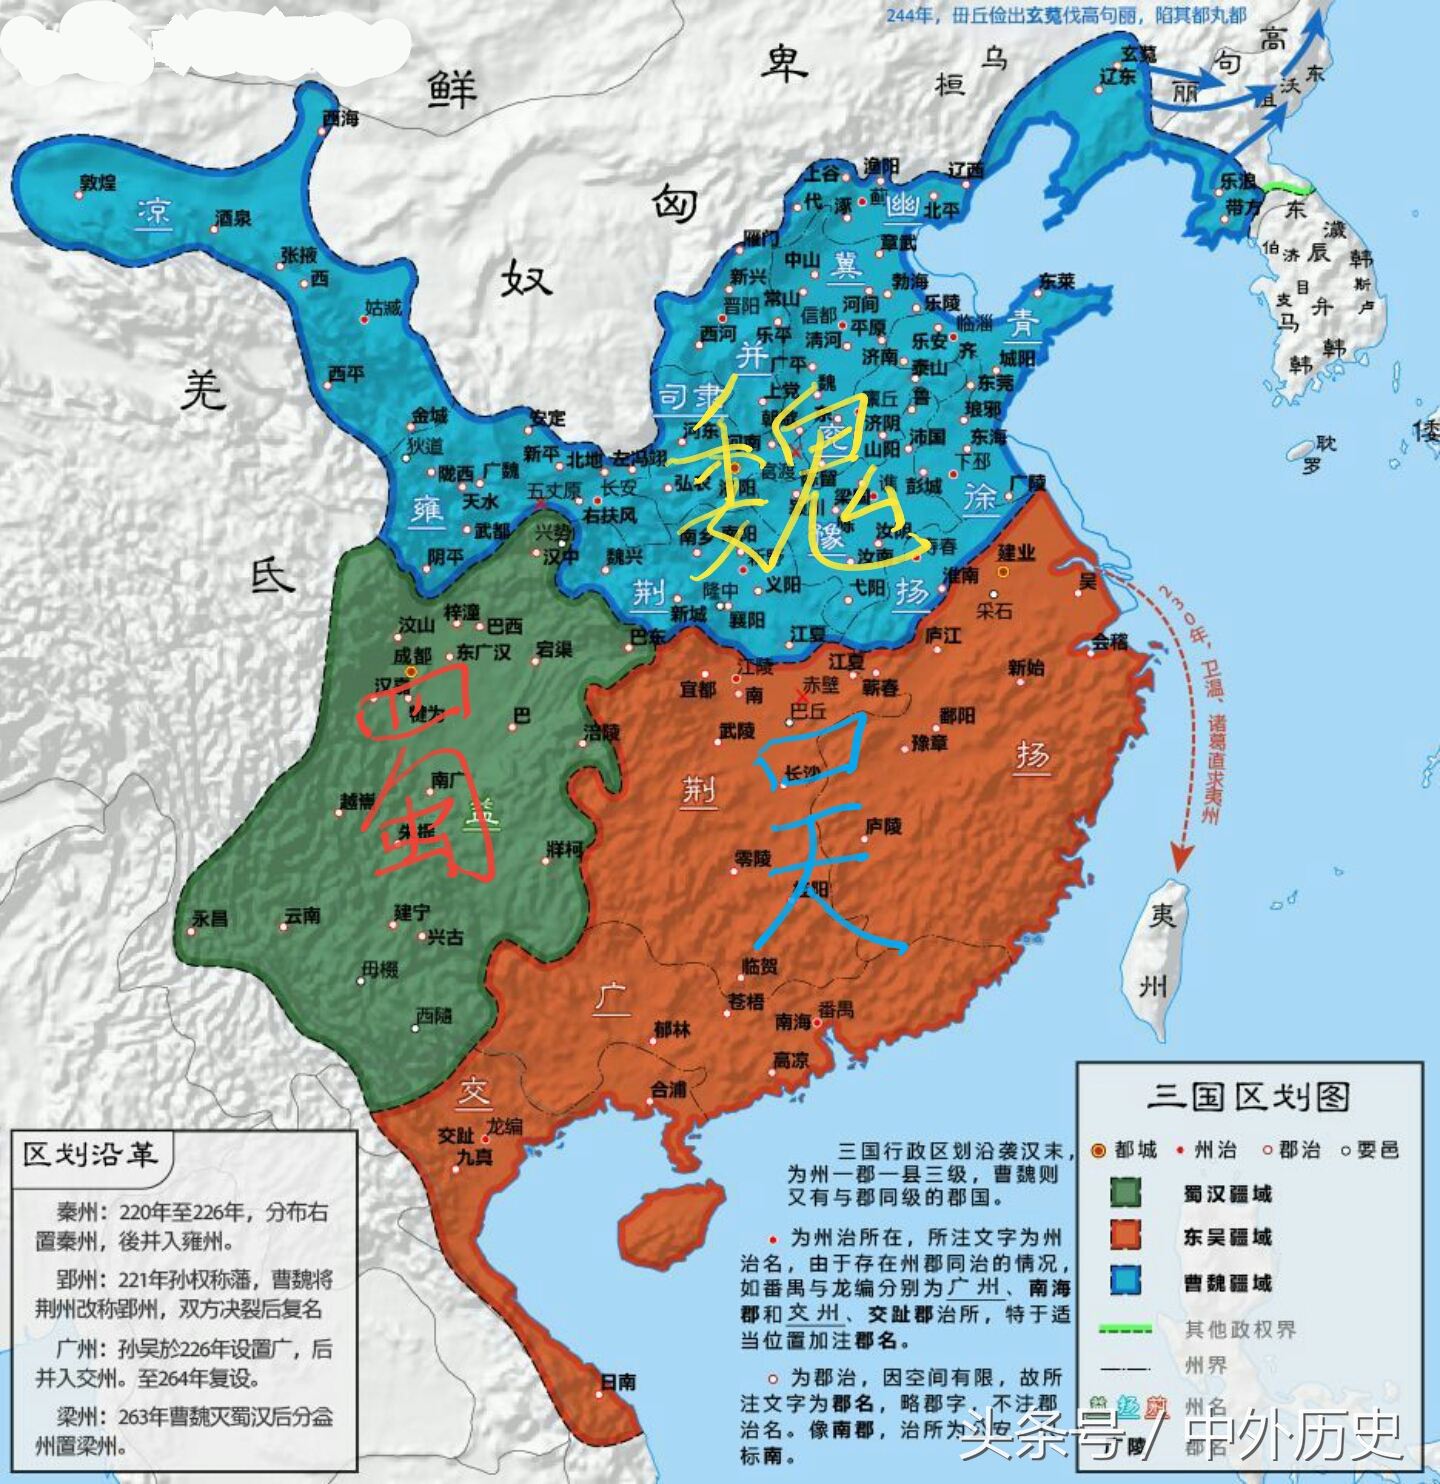 三国时期地图分布图片